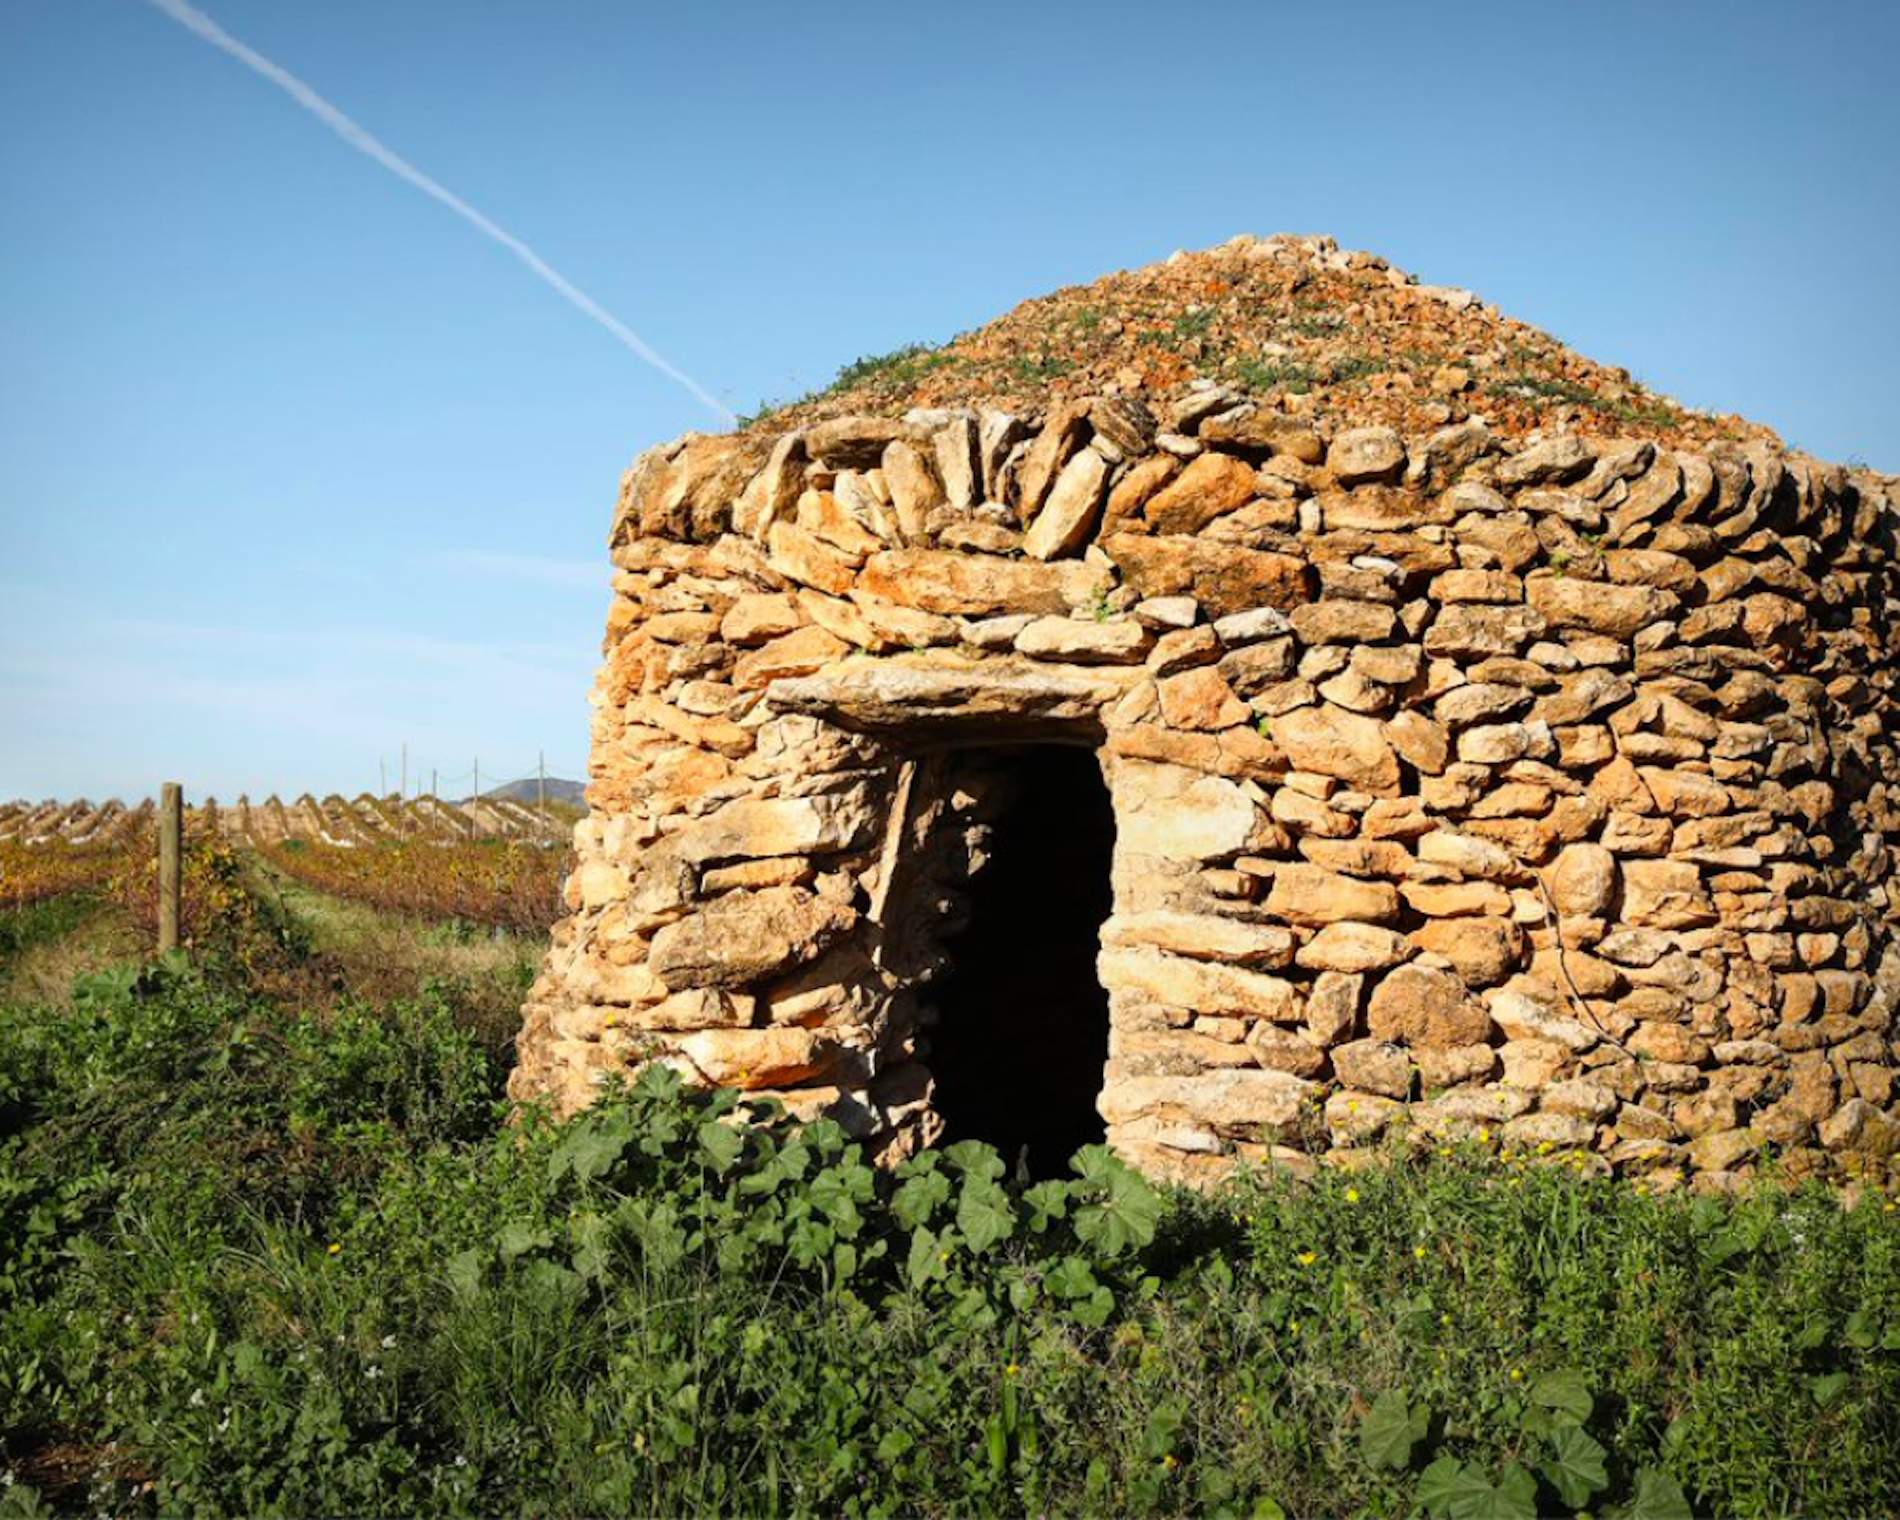 Inaugurada en Tortosa una exposición sobre piedra seca, una técnica constructiva milenaria que es todo un arte